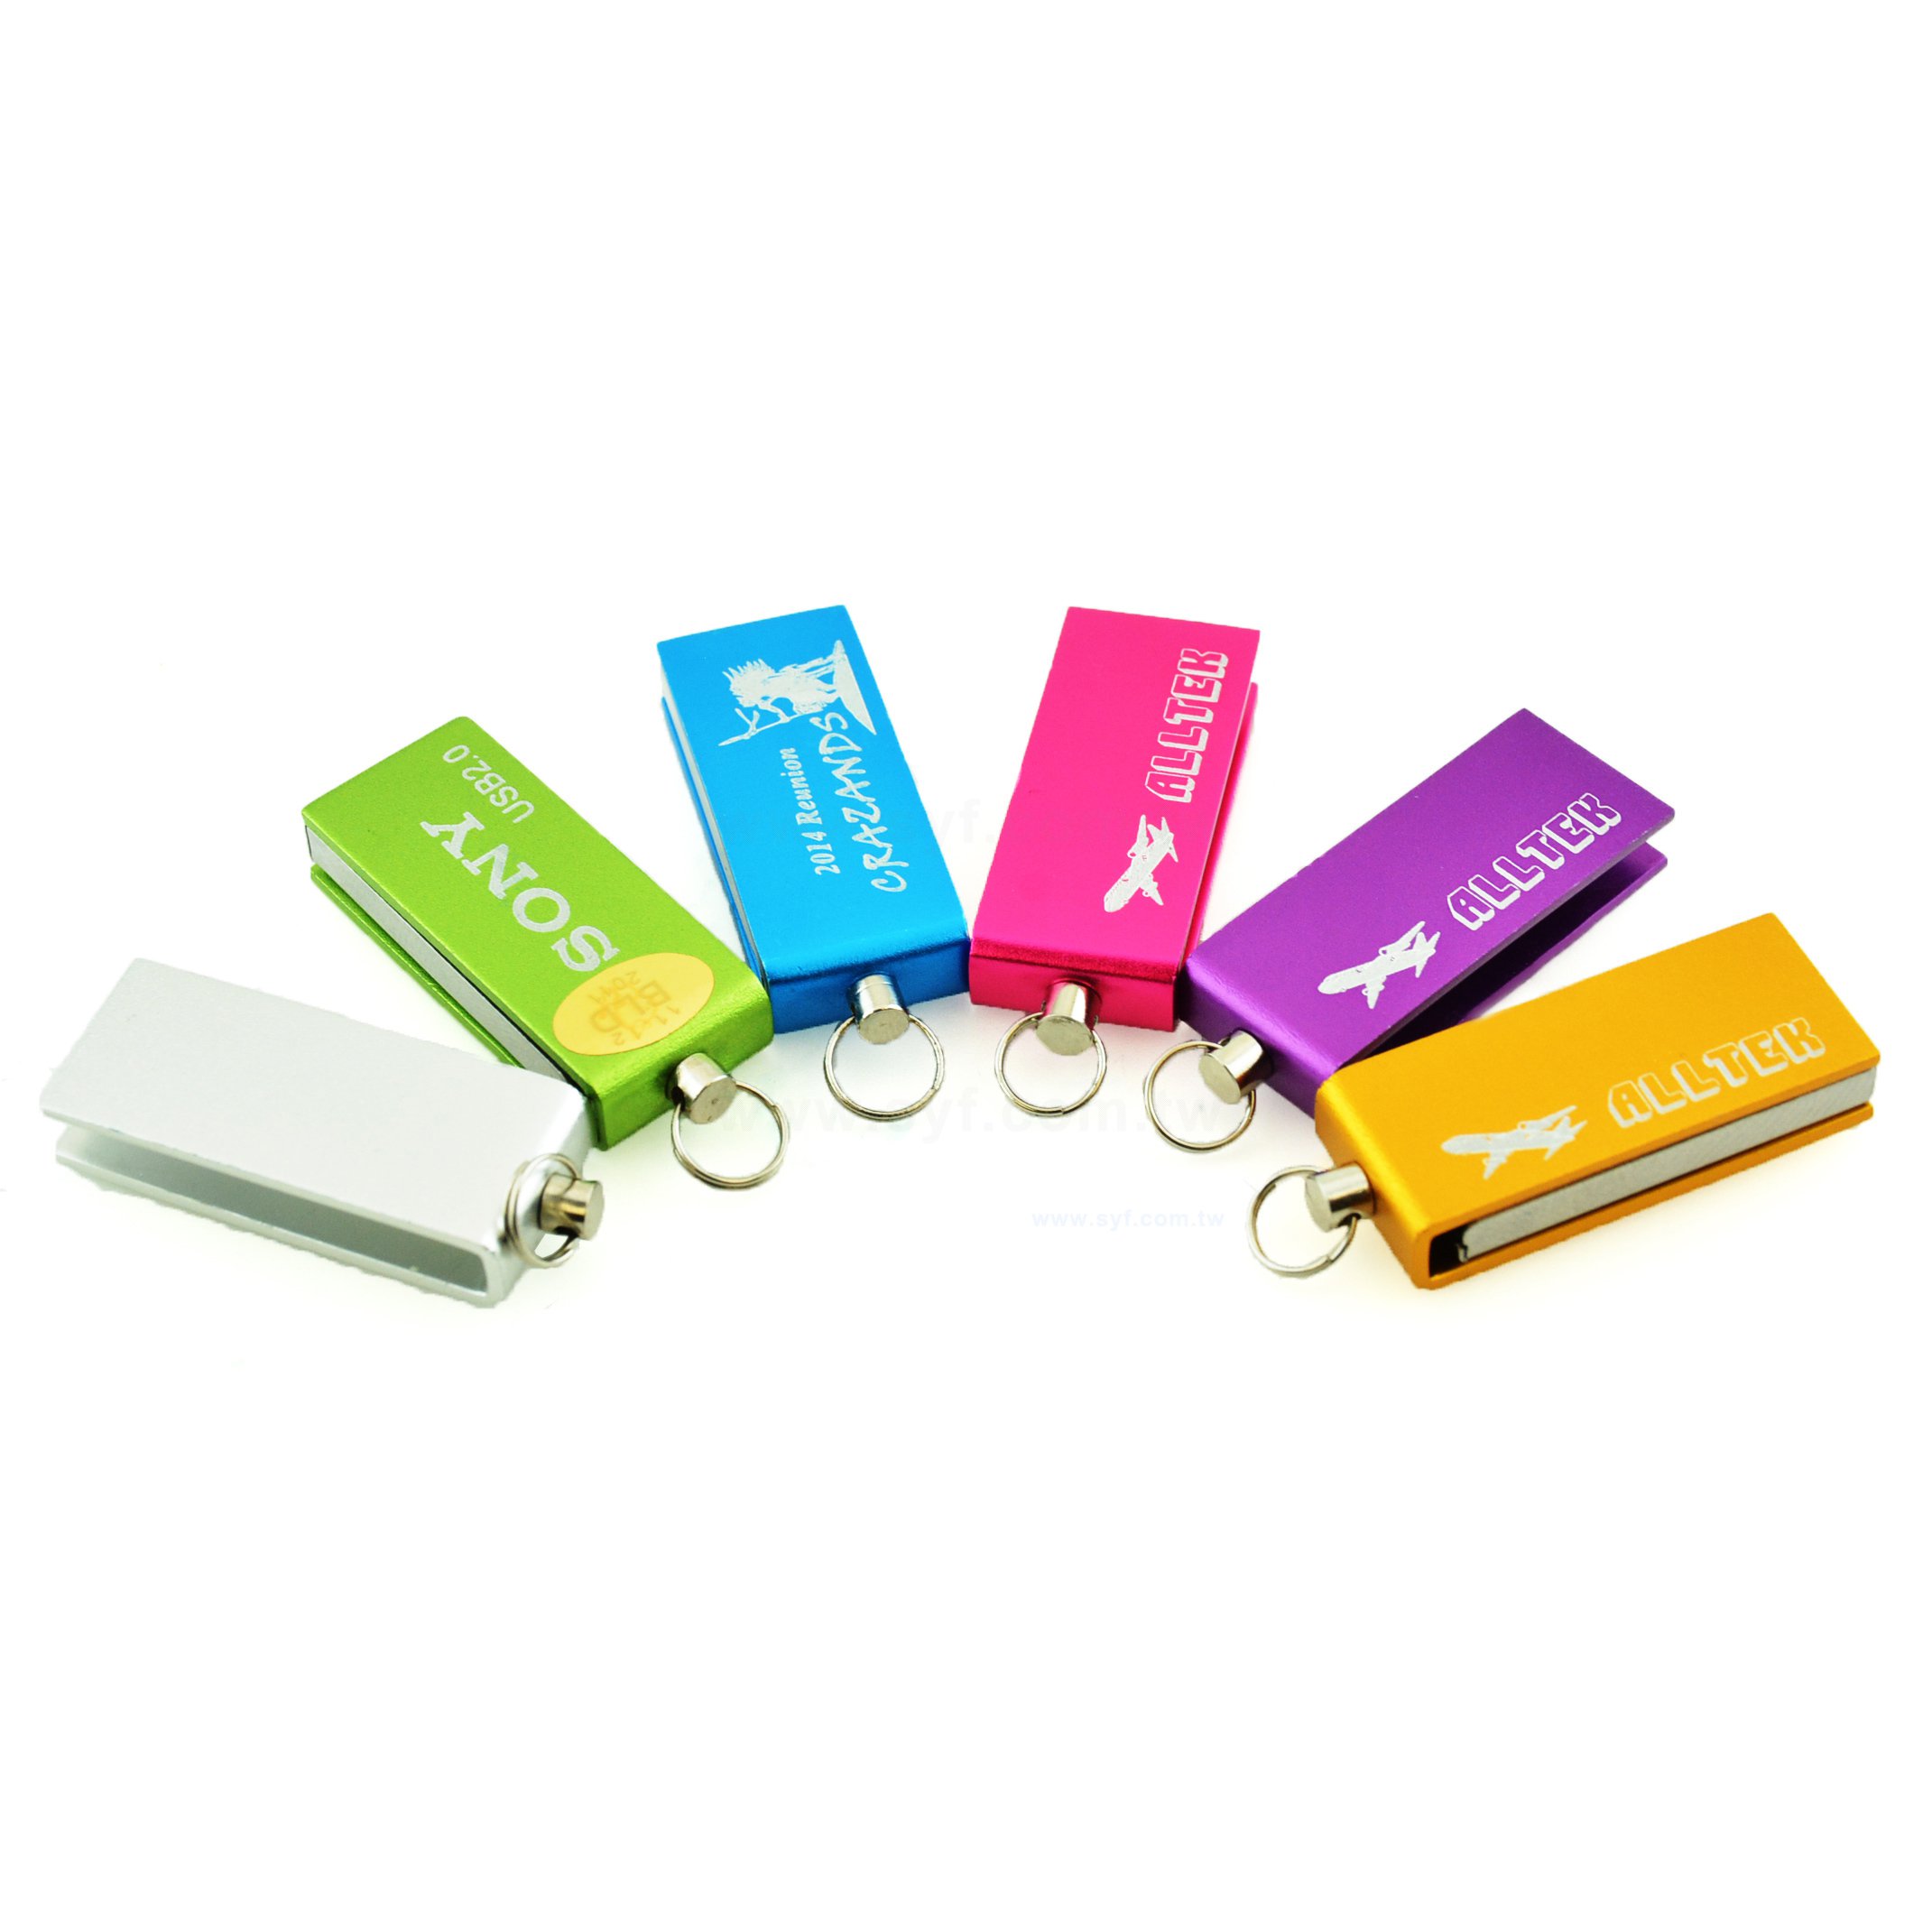 隨身碟-商務禮贈品-旋轉金屬USB隨身碟-客製隨身碟容量-採購股東會贈品_13